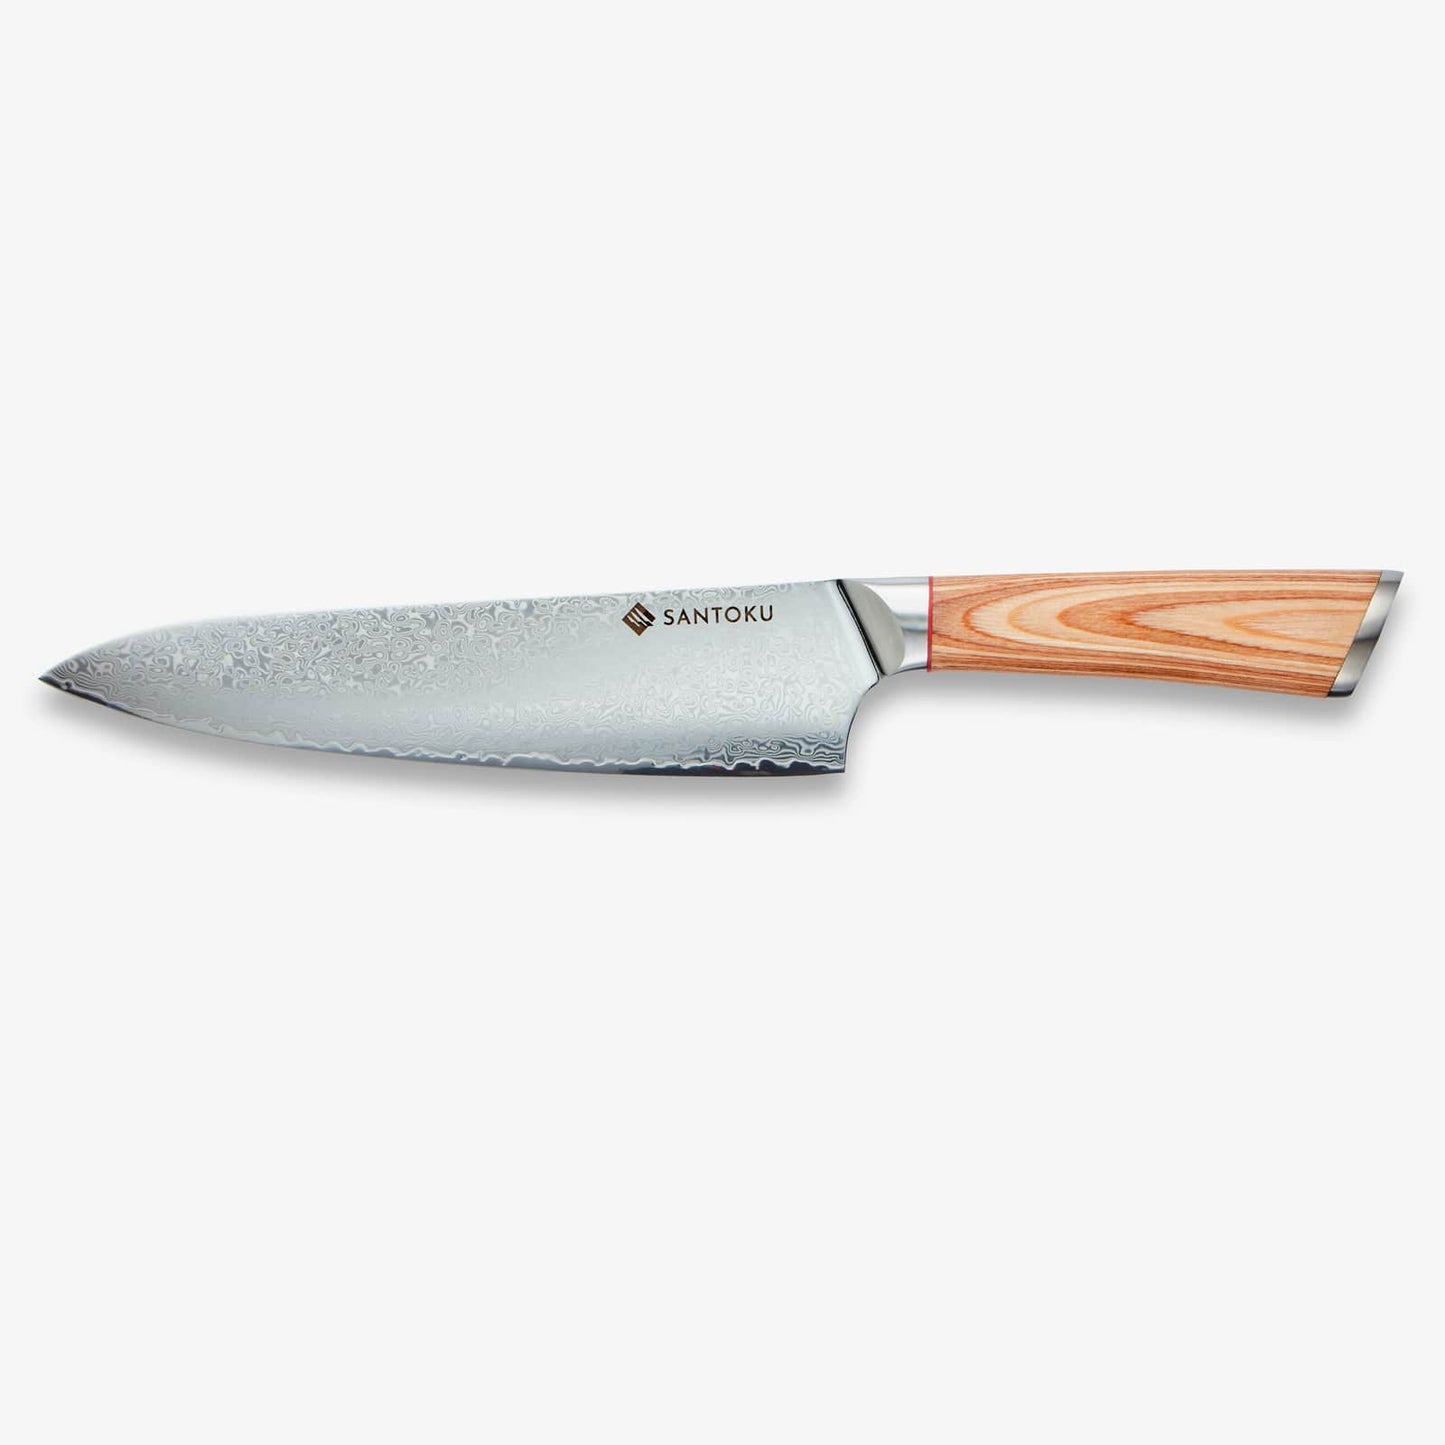 Haruta (はる た) 67 Schicht AUS 10 Damaskus Steel Kitchen Messer